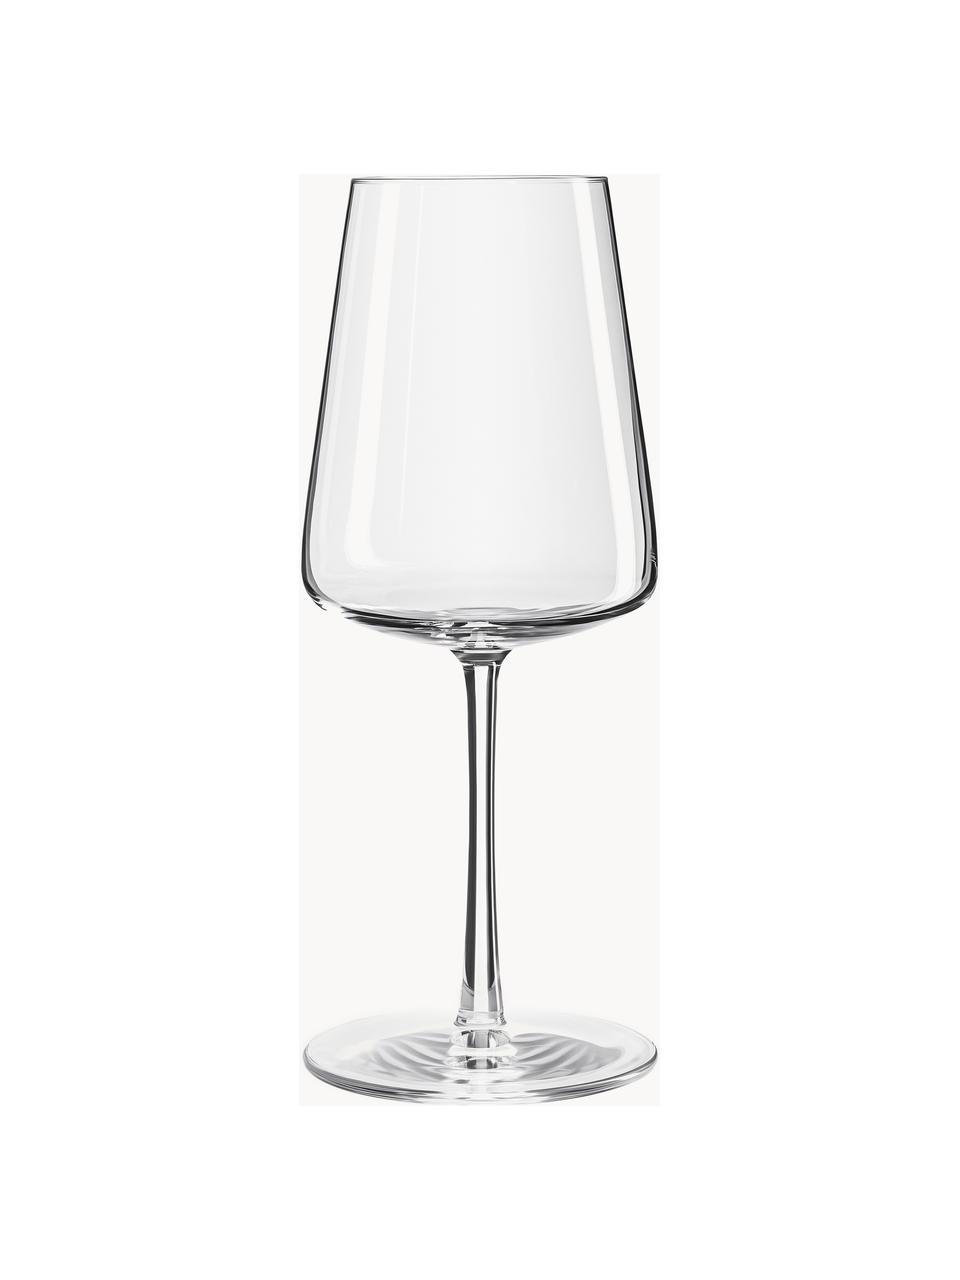 Krištáľové poháre na biele víno Power, 6 ks, Krištáľové sklo

Vneste lesk krištáľového skla na váš jedálenský stôl! Sklo je výnimočne priehľadné a ťažké, čo znamená, že pôsobí hodnotne a zároveň dobre vyzerá. Navyše jemné tvary robia z každého kusu špeciálny kúsok, ktorý je praktický aj krásny., Priehľadná, Ø 9 x V 21 cm, 400 ml